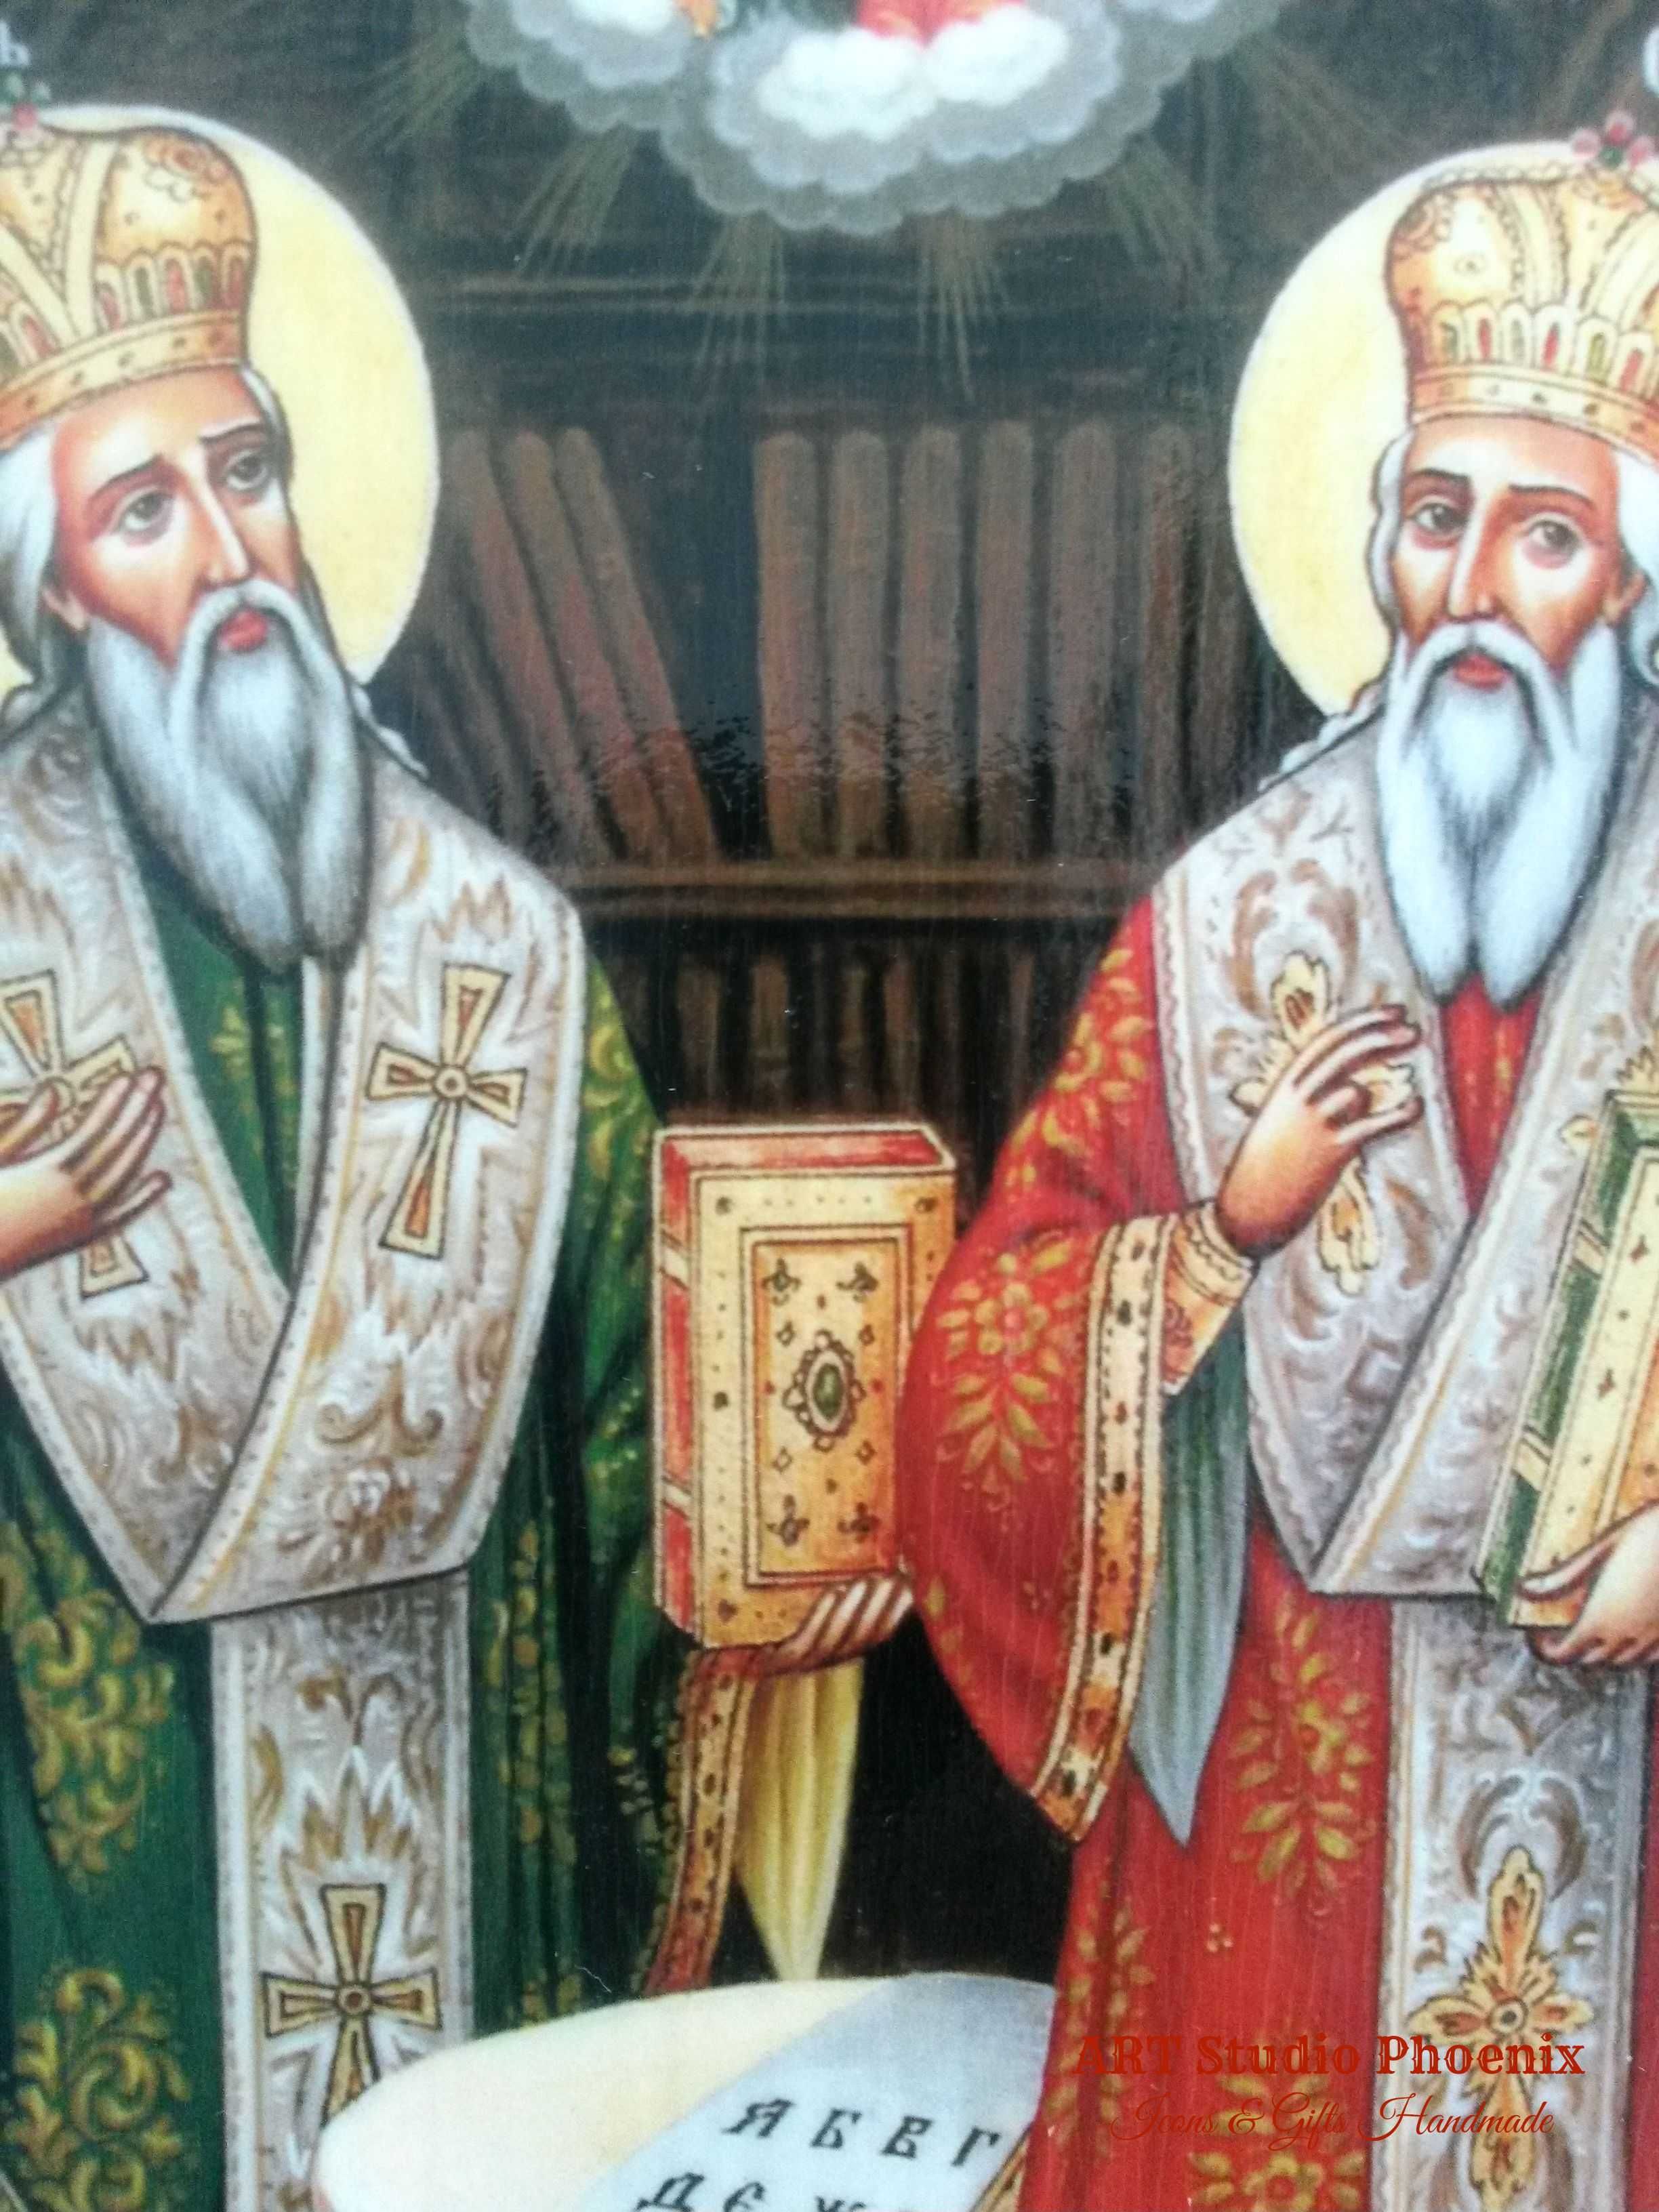 Икона на Св. Св. Кирил и Методий icona Sv. Sv. Kiril i Metodii